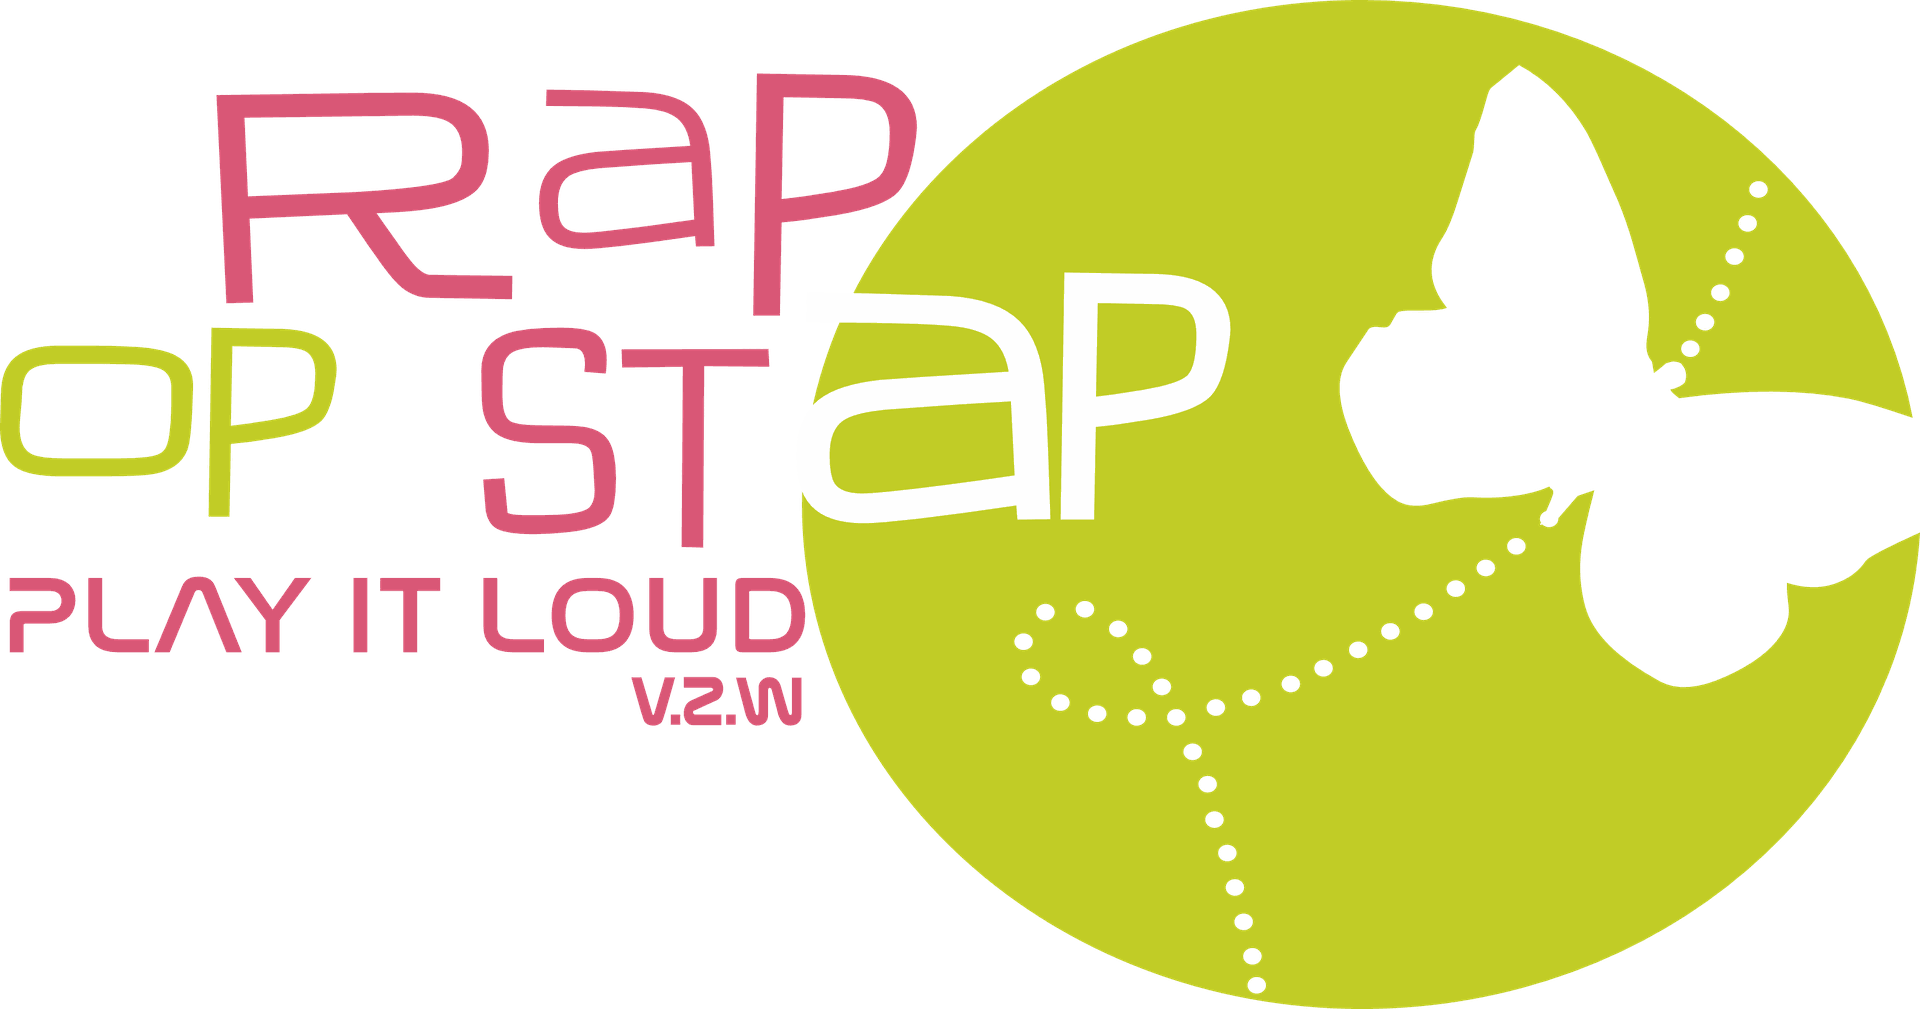 Rap op stap Play it loud